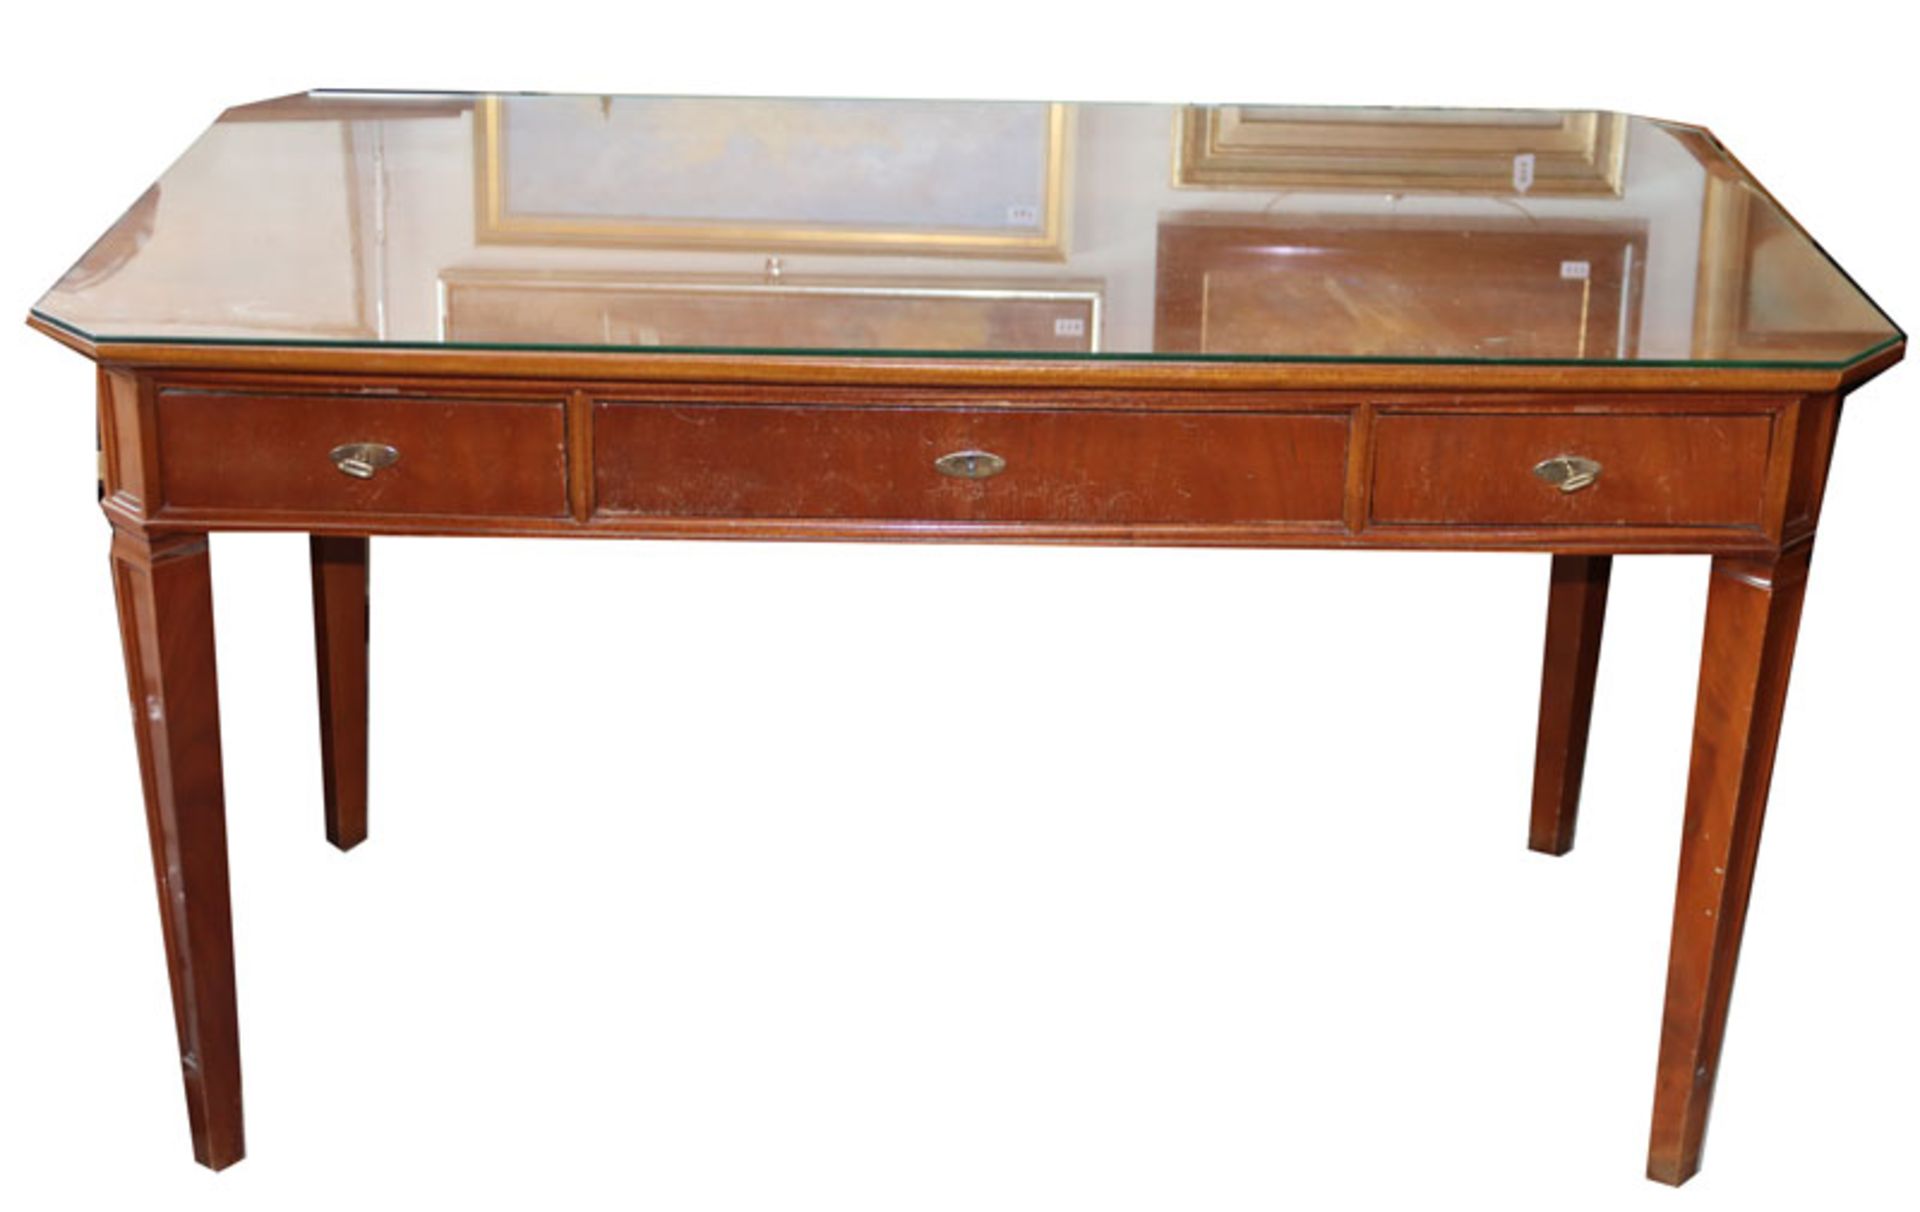 Schreibtisch, Korpus mit 3 Schüben, Glasplatte, H 76 cm, B 137 cm, T 47 cm, Gebrauchsspuren